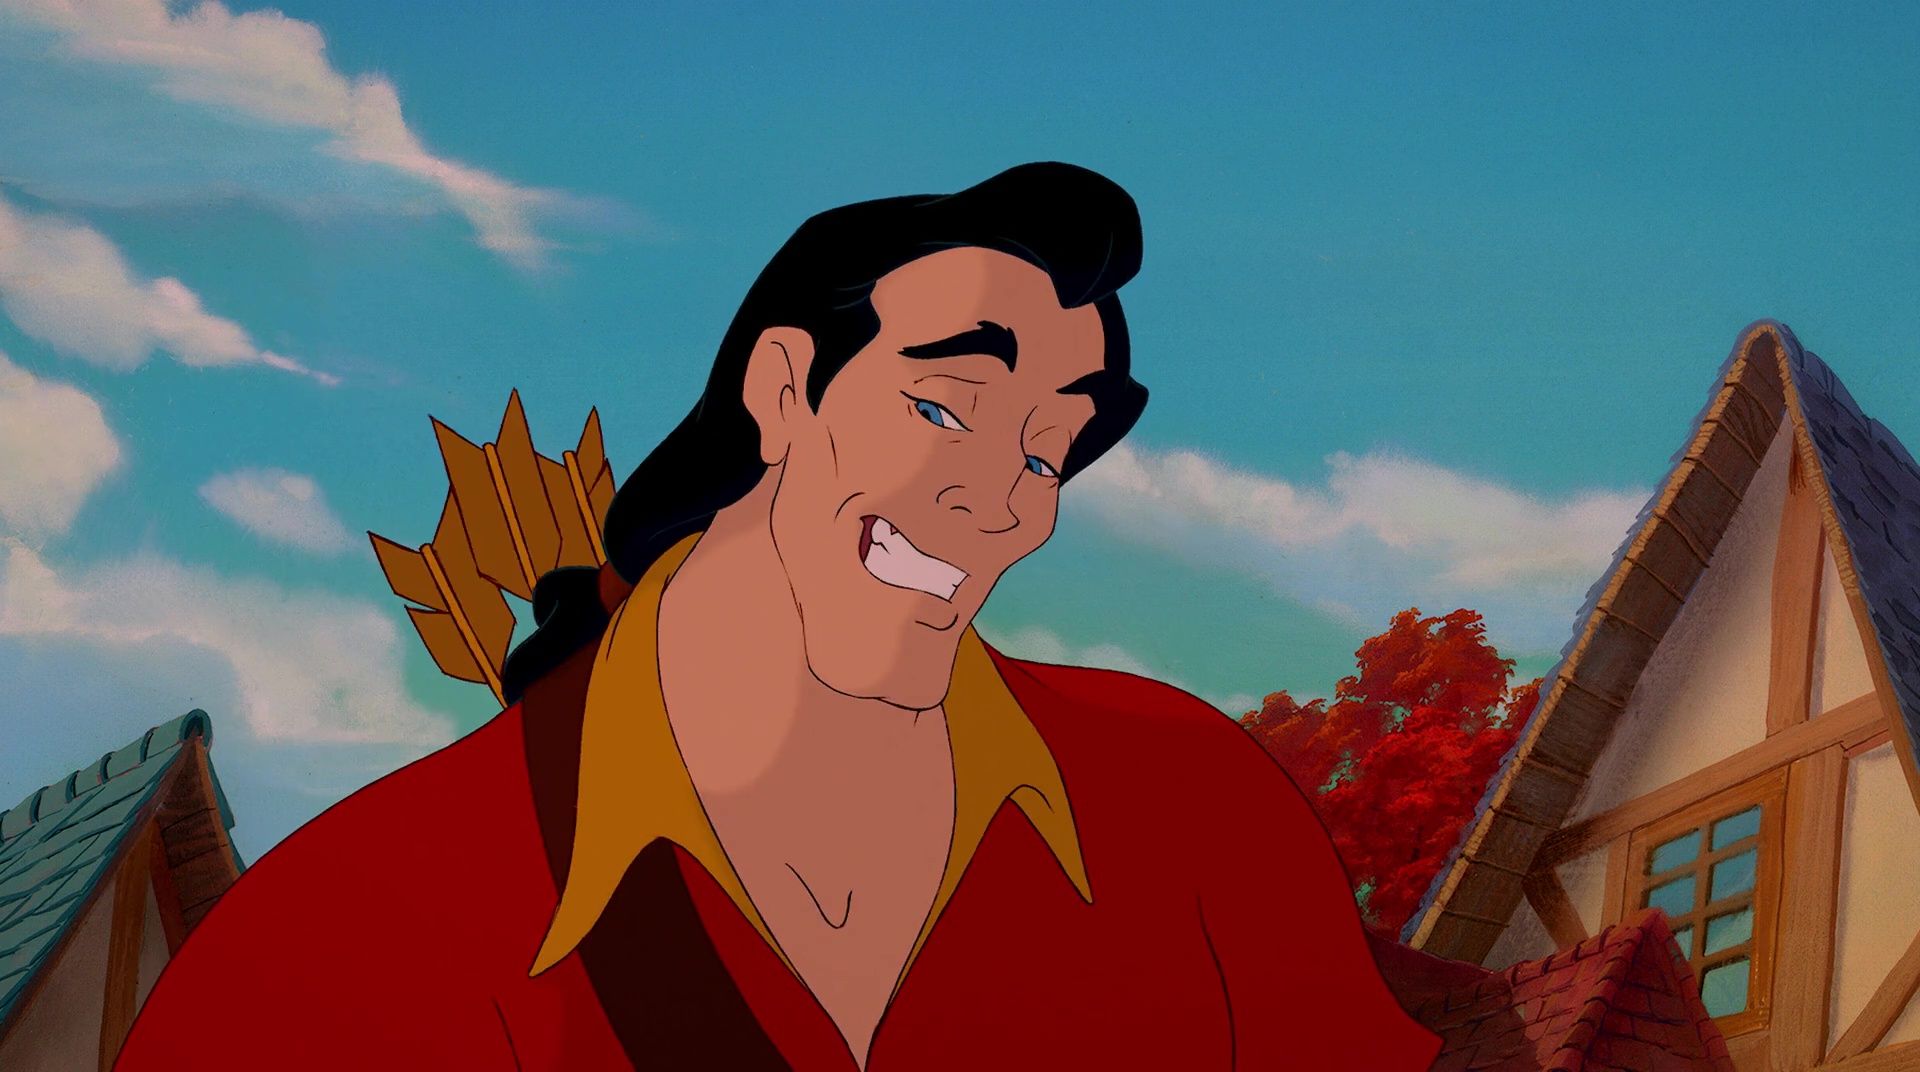 Gaston (La Belle et la Bête)